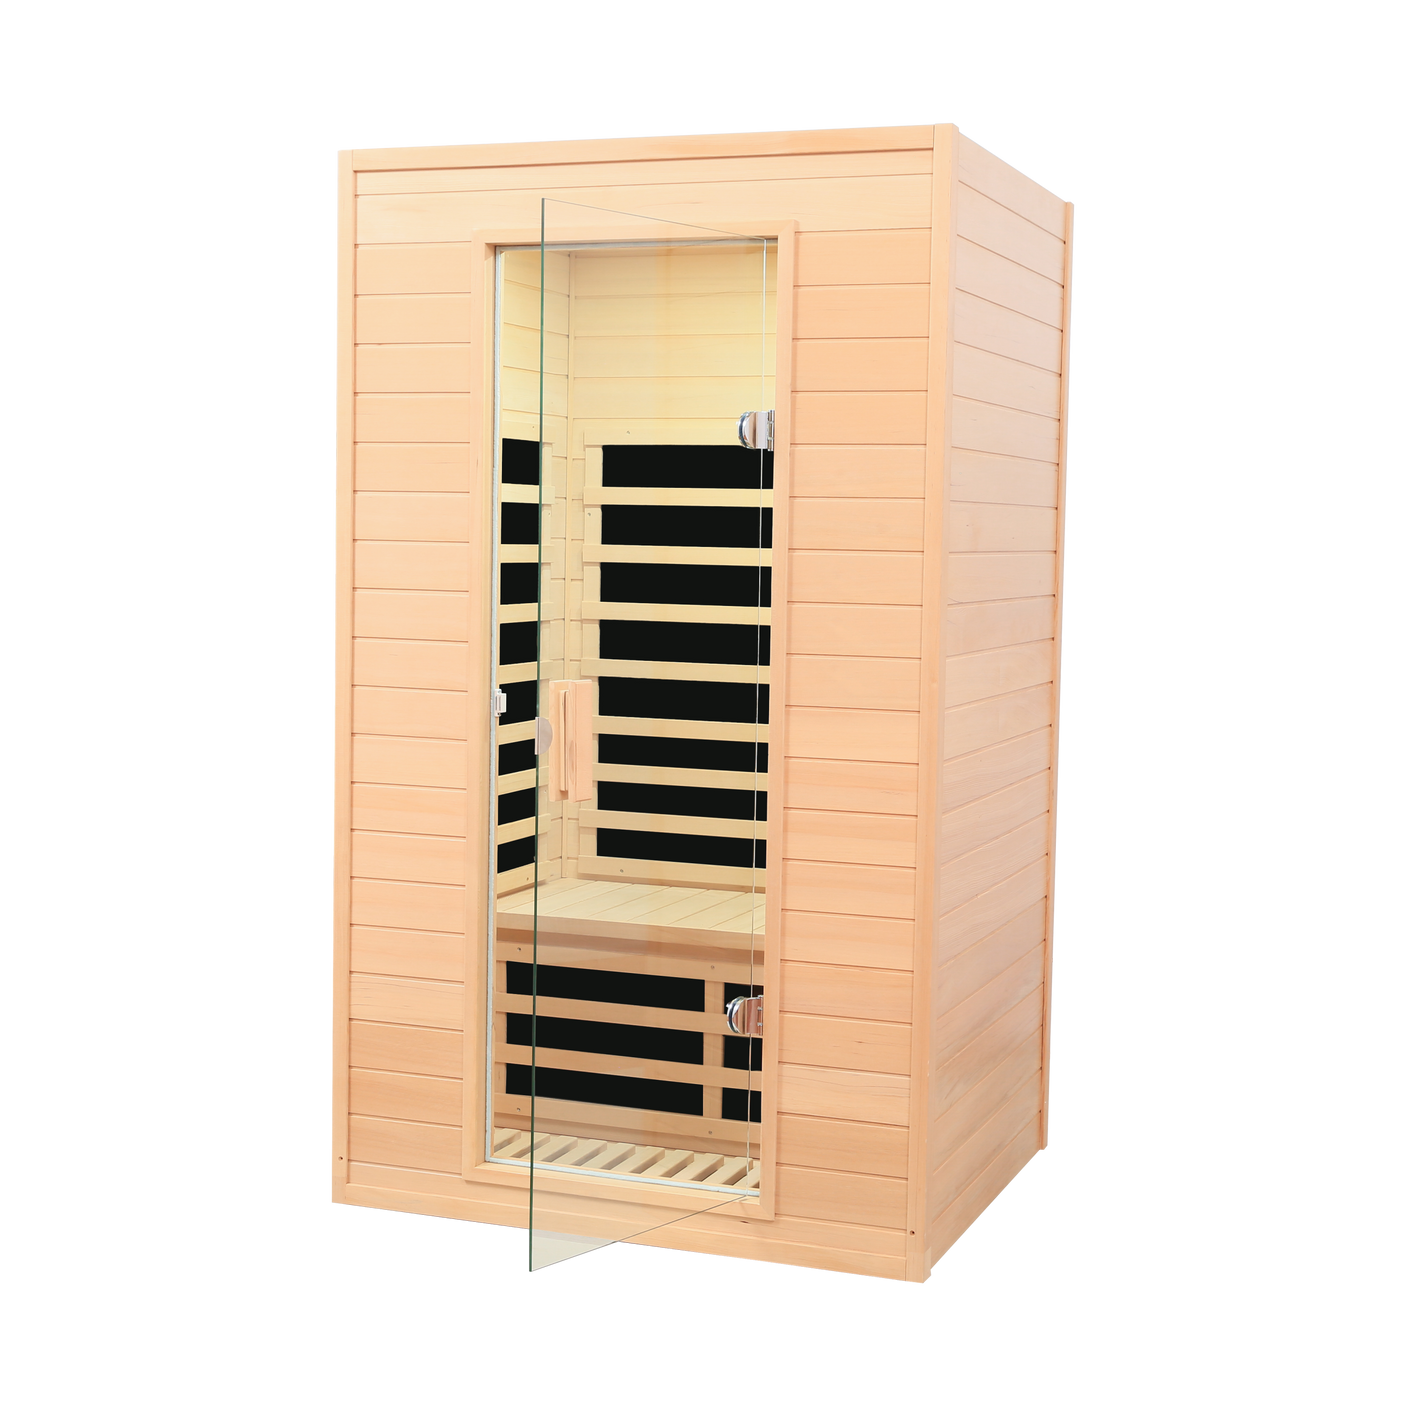 Hemlock far infrared one person indoor sauna room